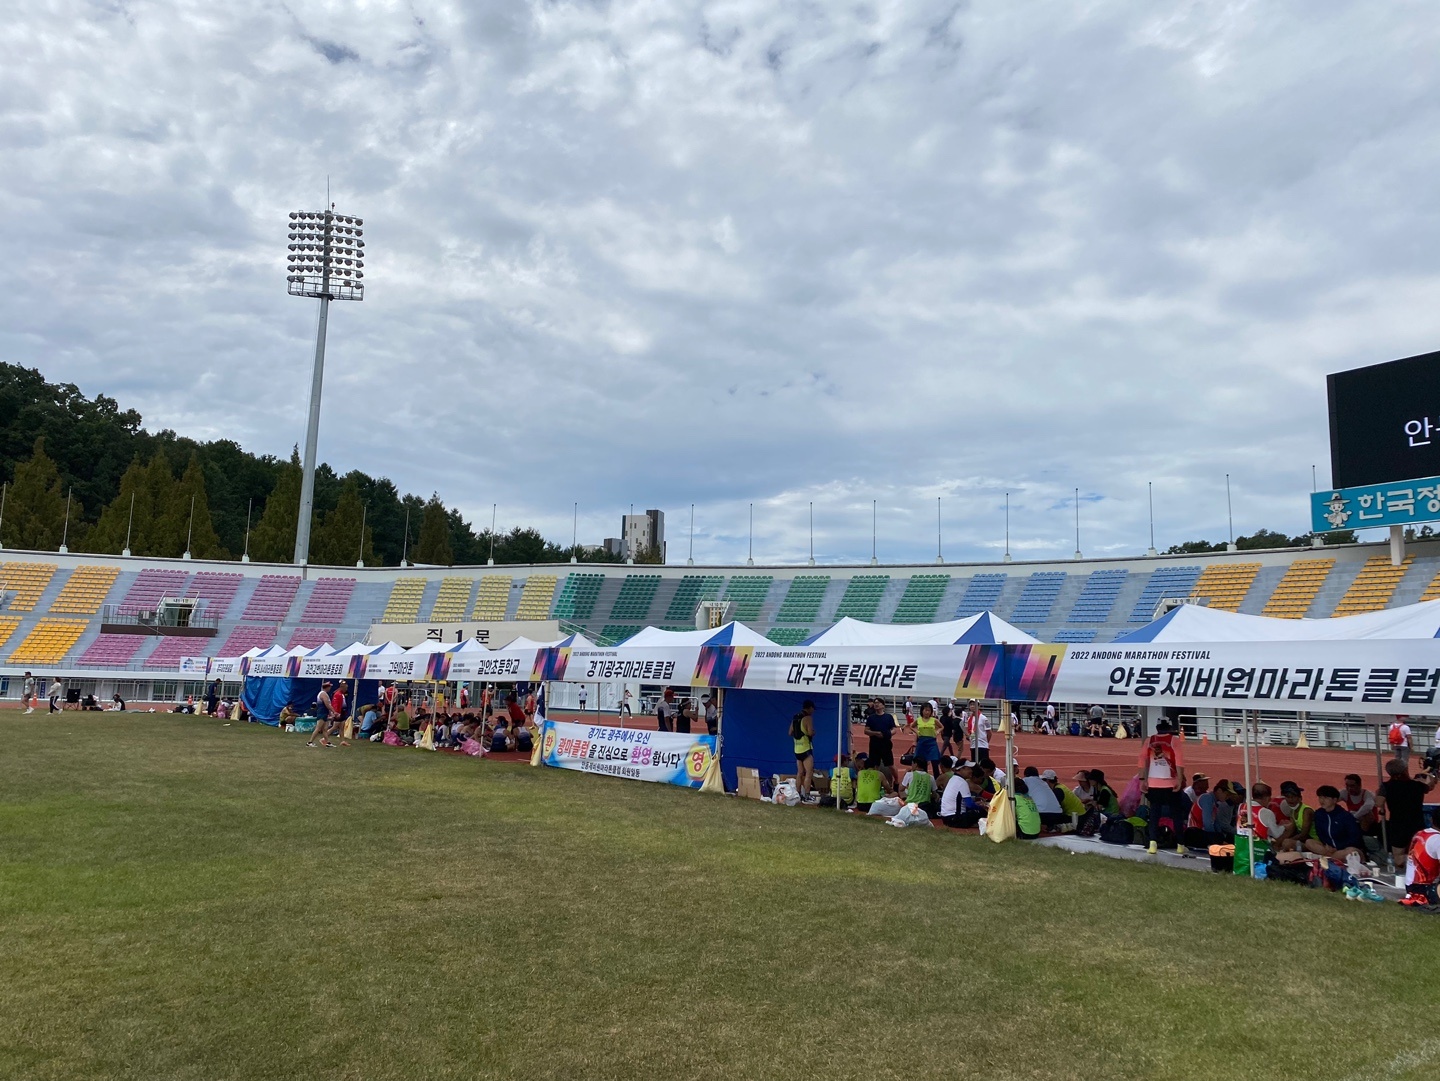 2022 안동마라톤대회